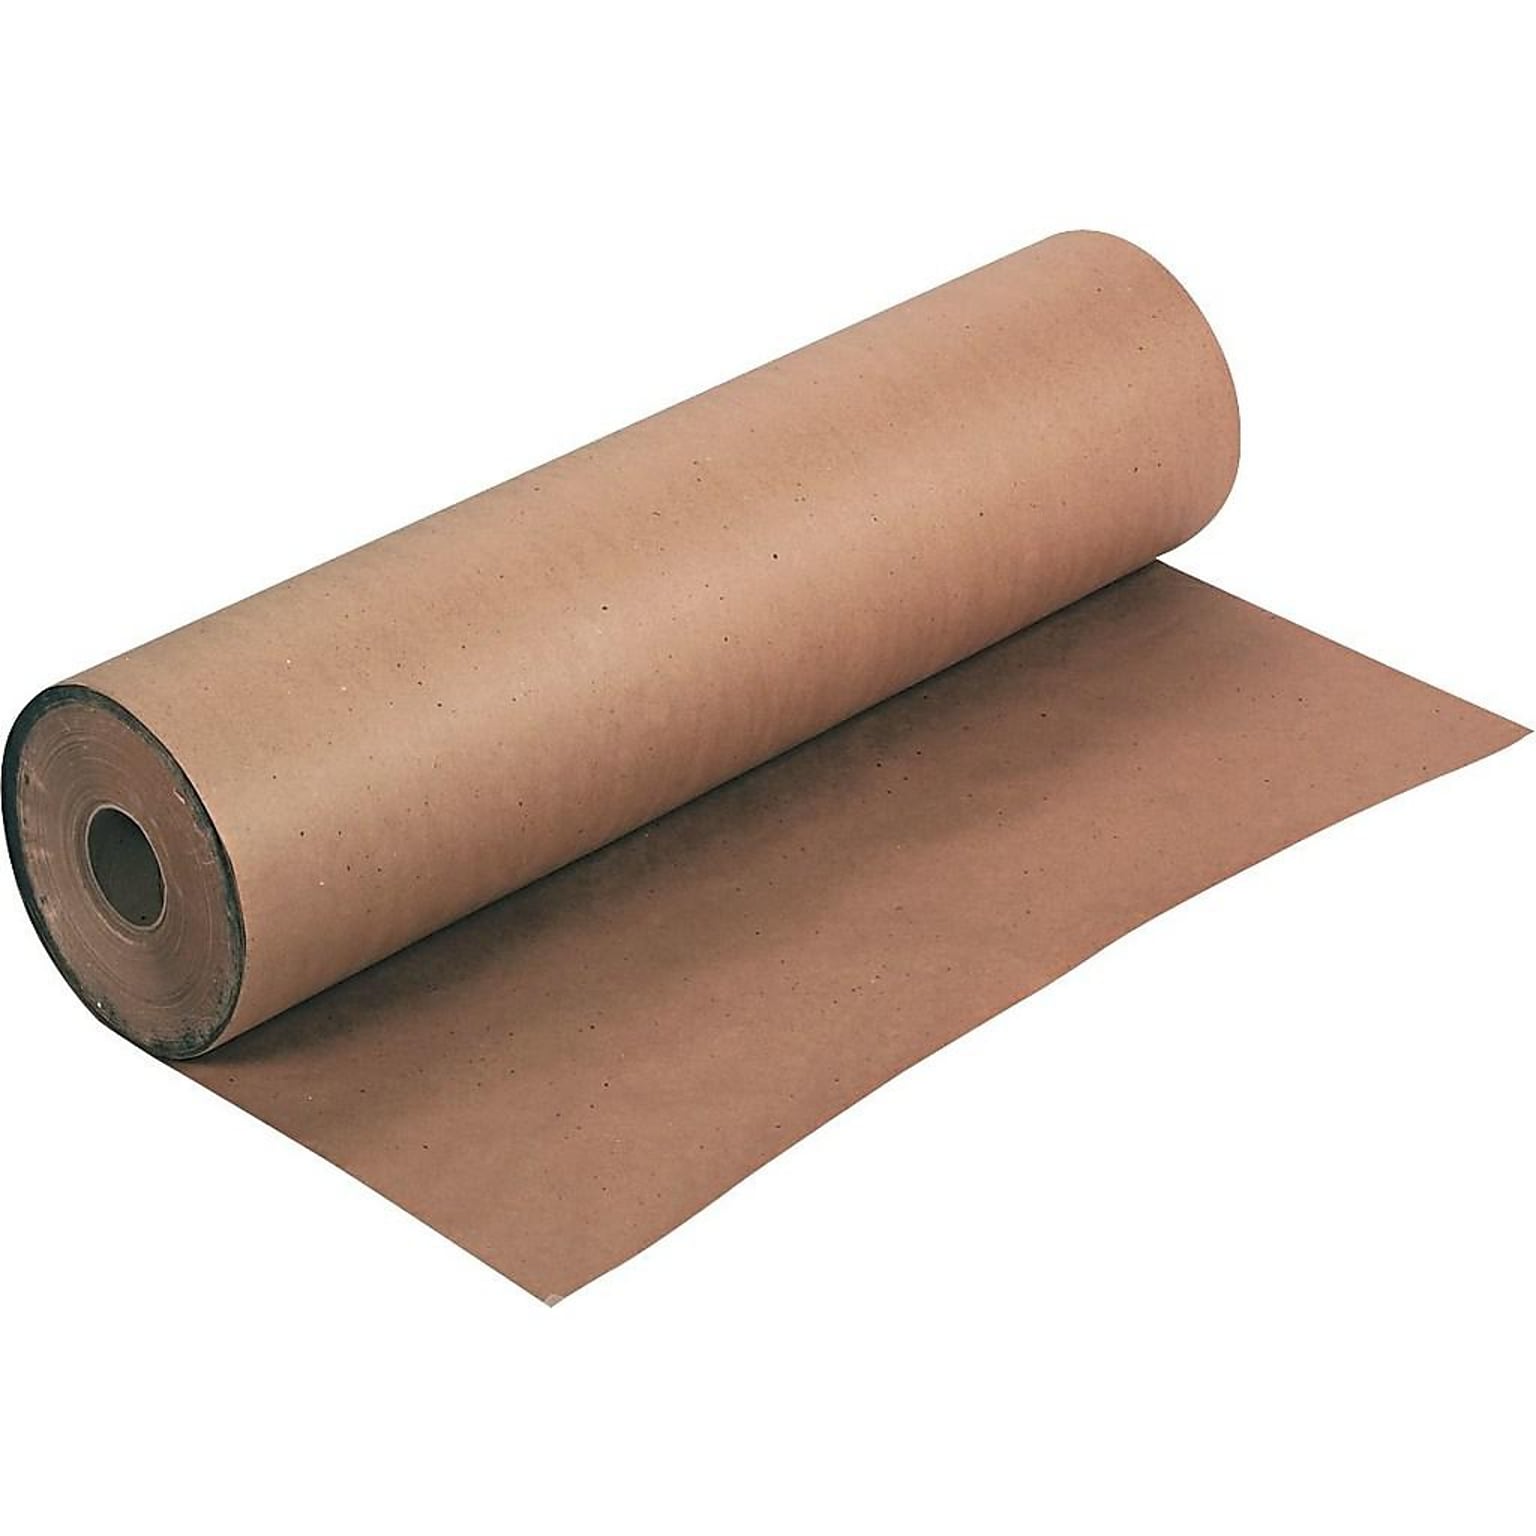 Kraft Paper Roll, 48 x 720 (PKP4850)